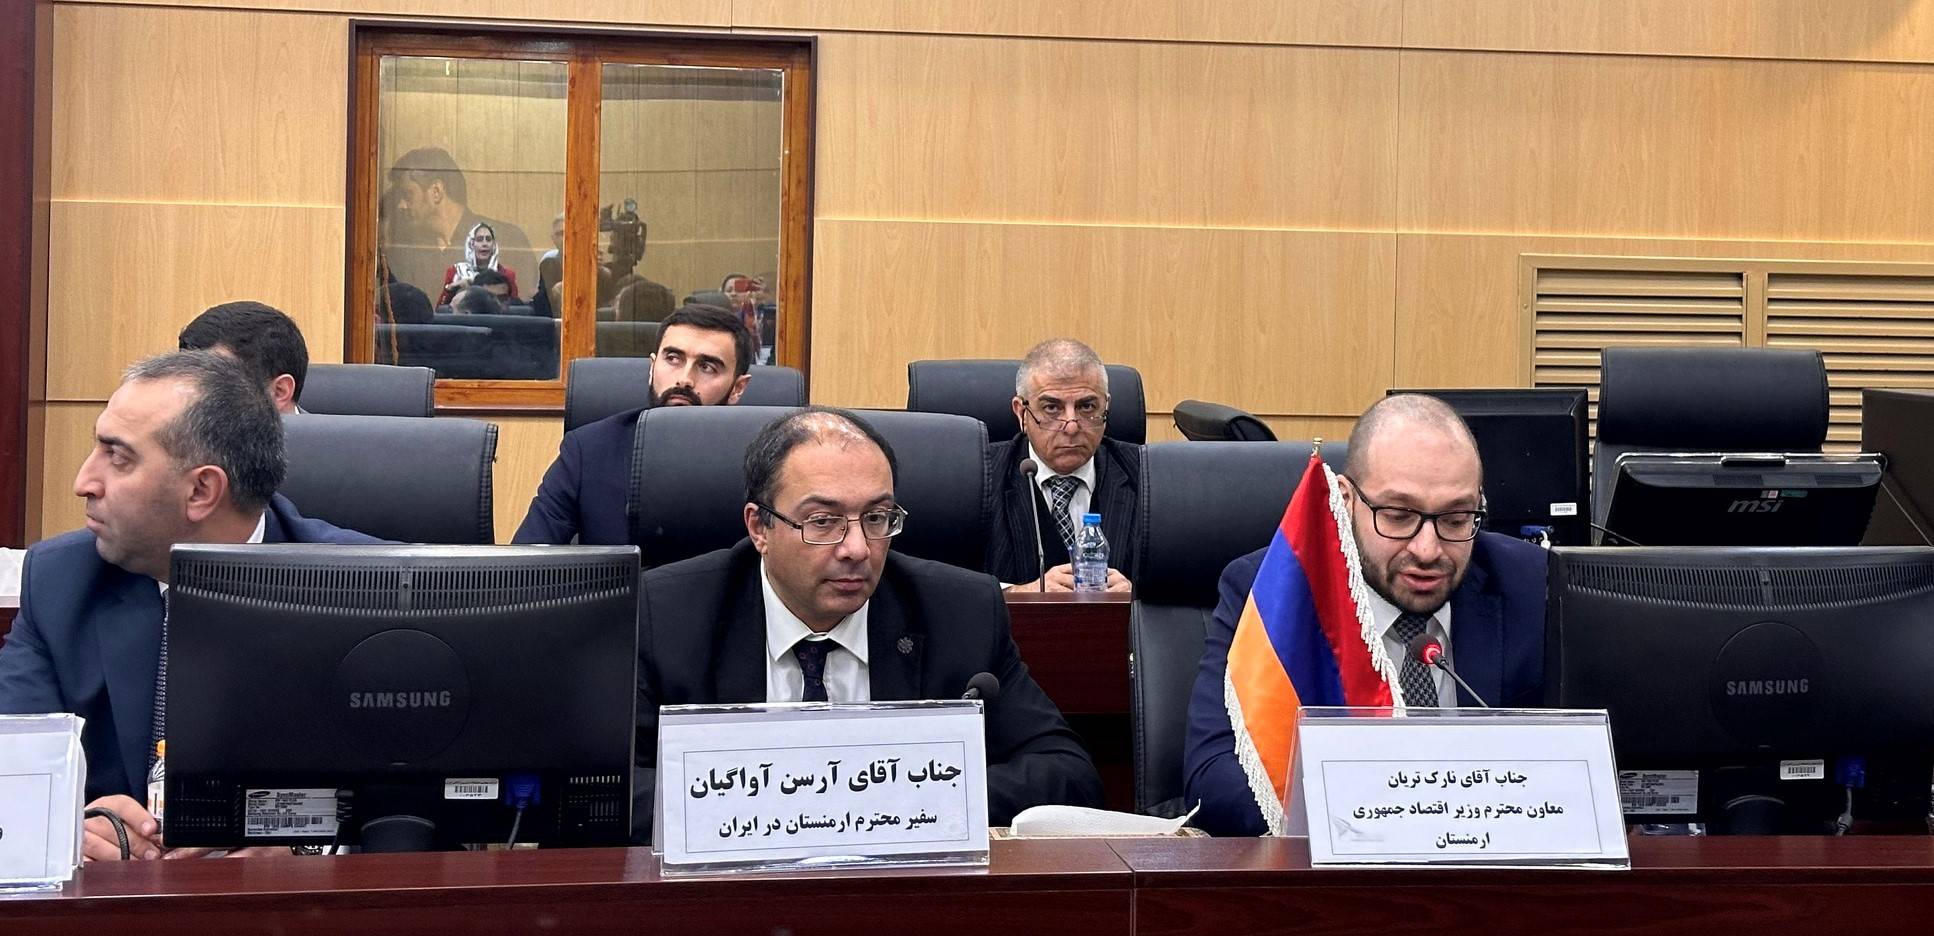 حضور نارگ تریان معاون وزیر اقتصاد جمهوری ارمنستان در همایش اقتصادی در تهران با حضور نمایندگان کشورهای عضو اوراسیا و ایران.